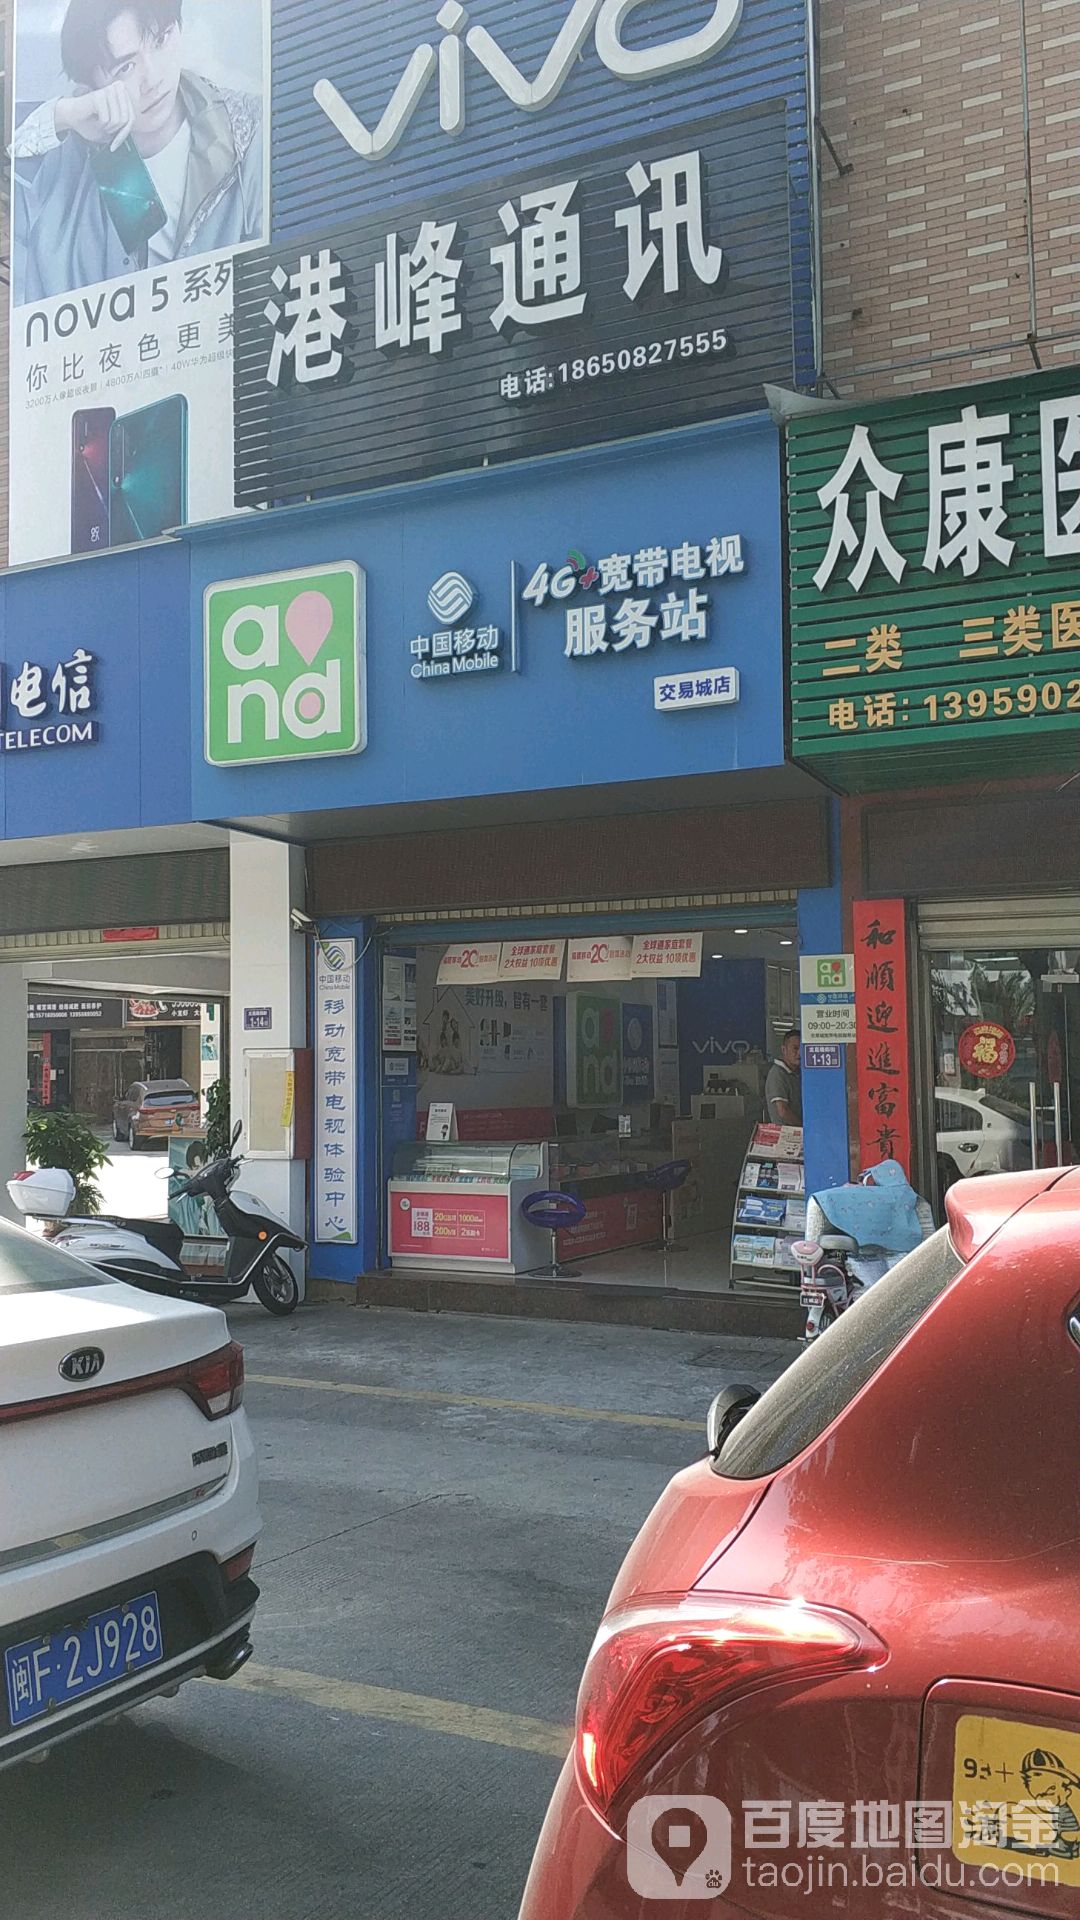 中国移动4G+宽带电视服务站(交易城店)